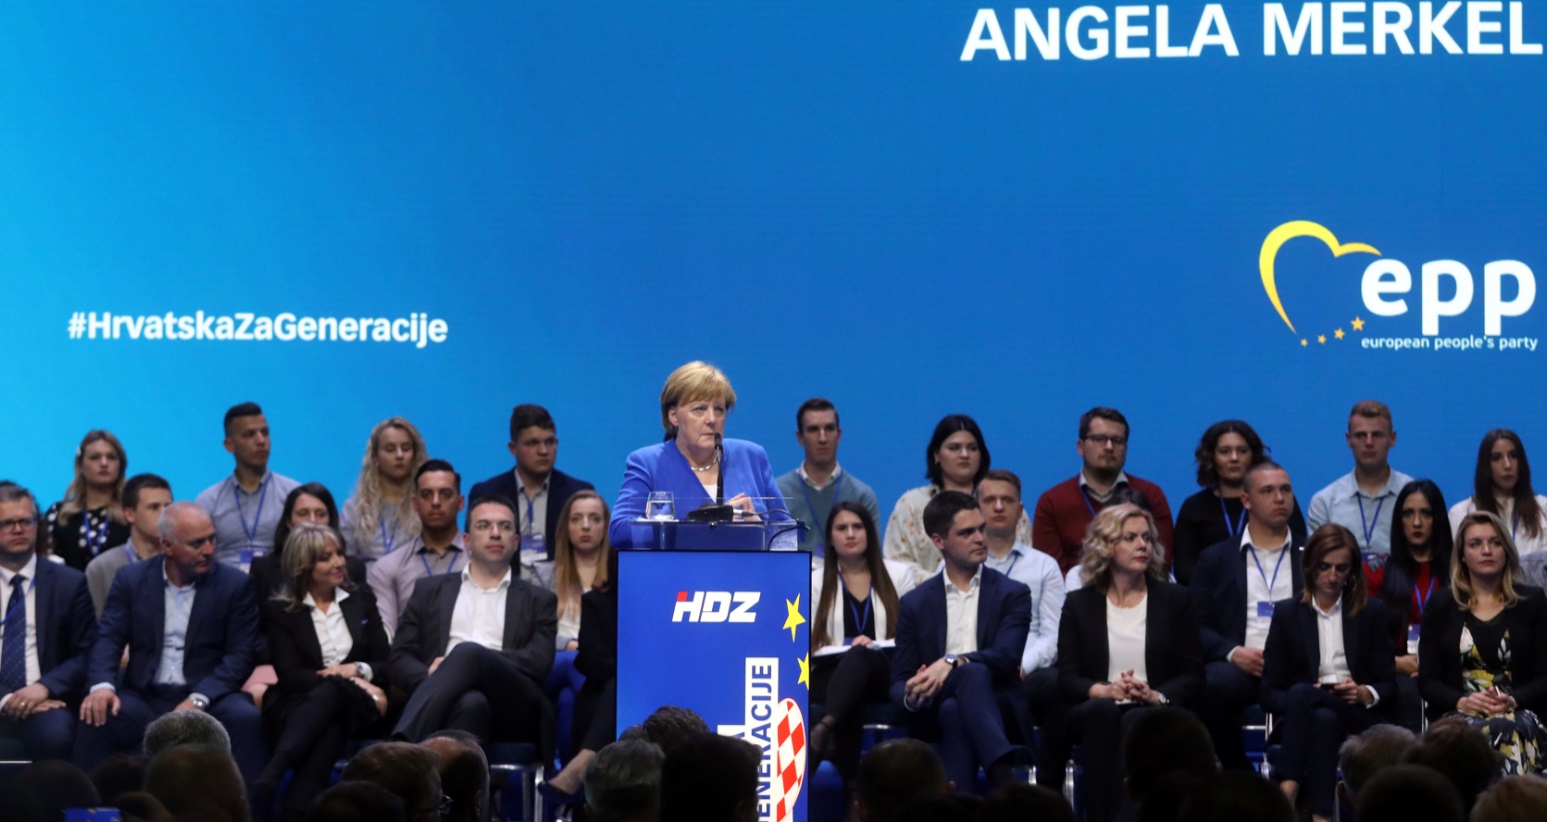 Merkel insta a frenar avance del nacionalismo en Europa